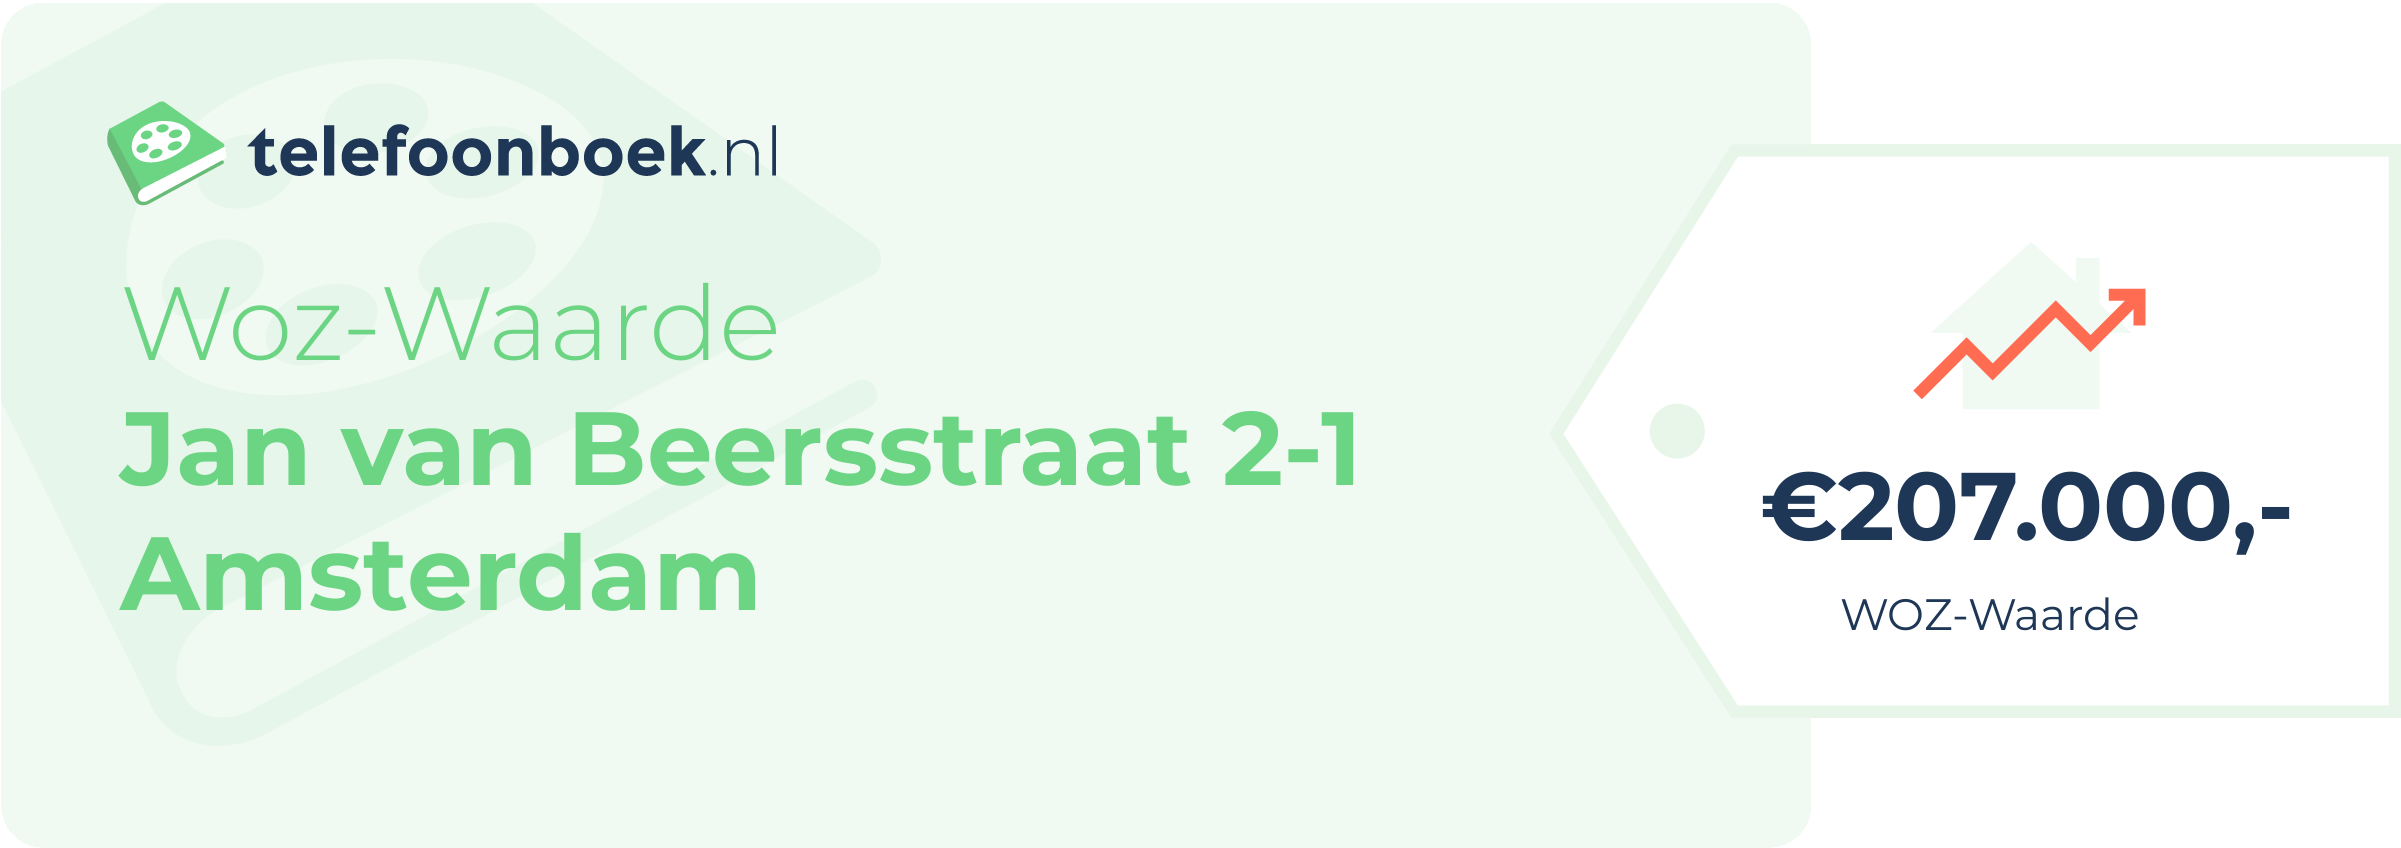 WOZ-waarde Jan Van Beersstraat 2-1 Amsterdam